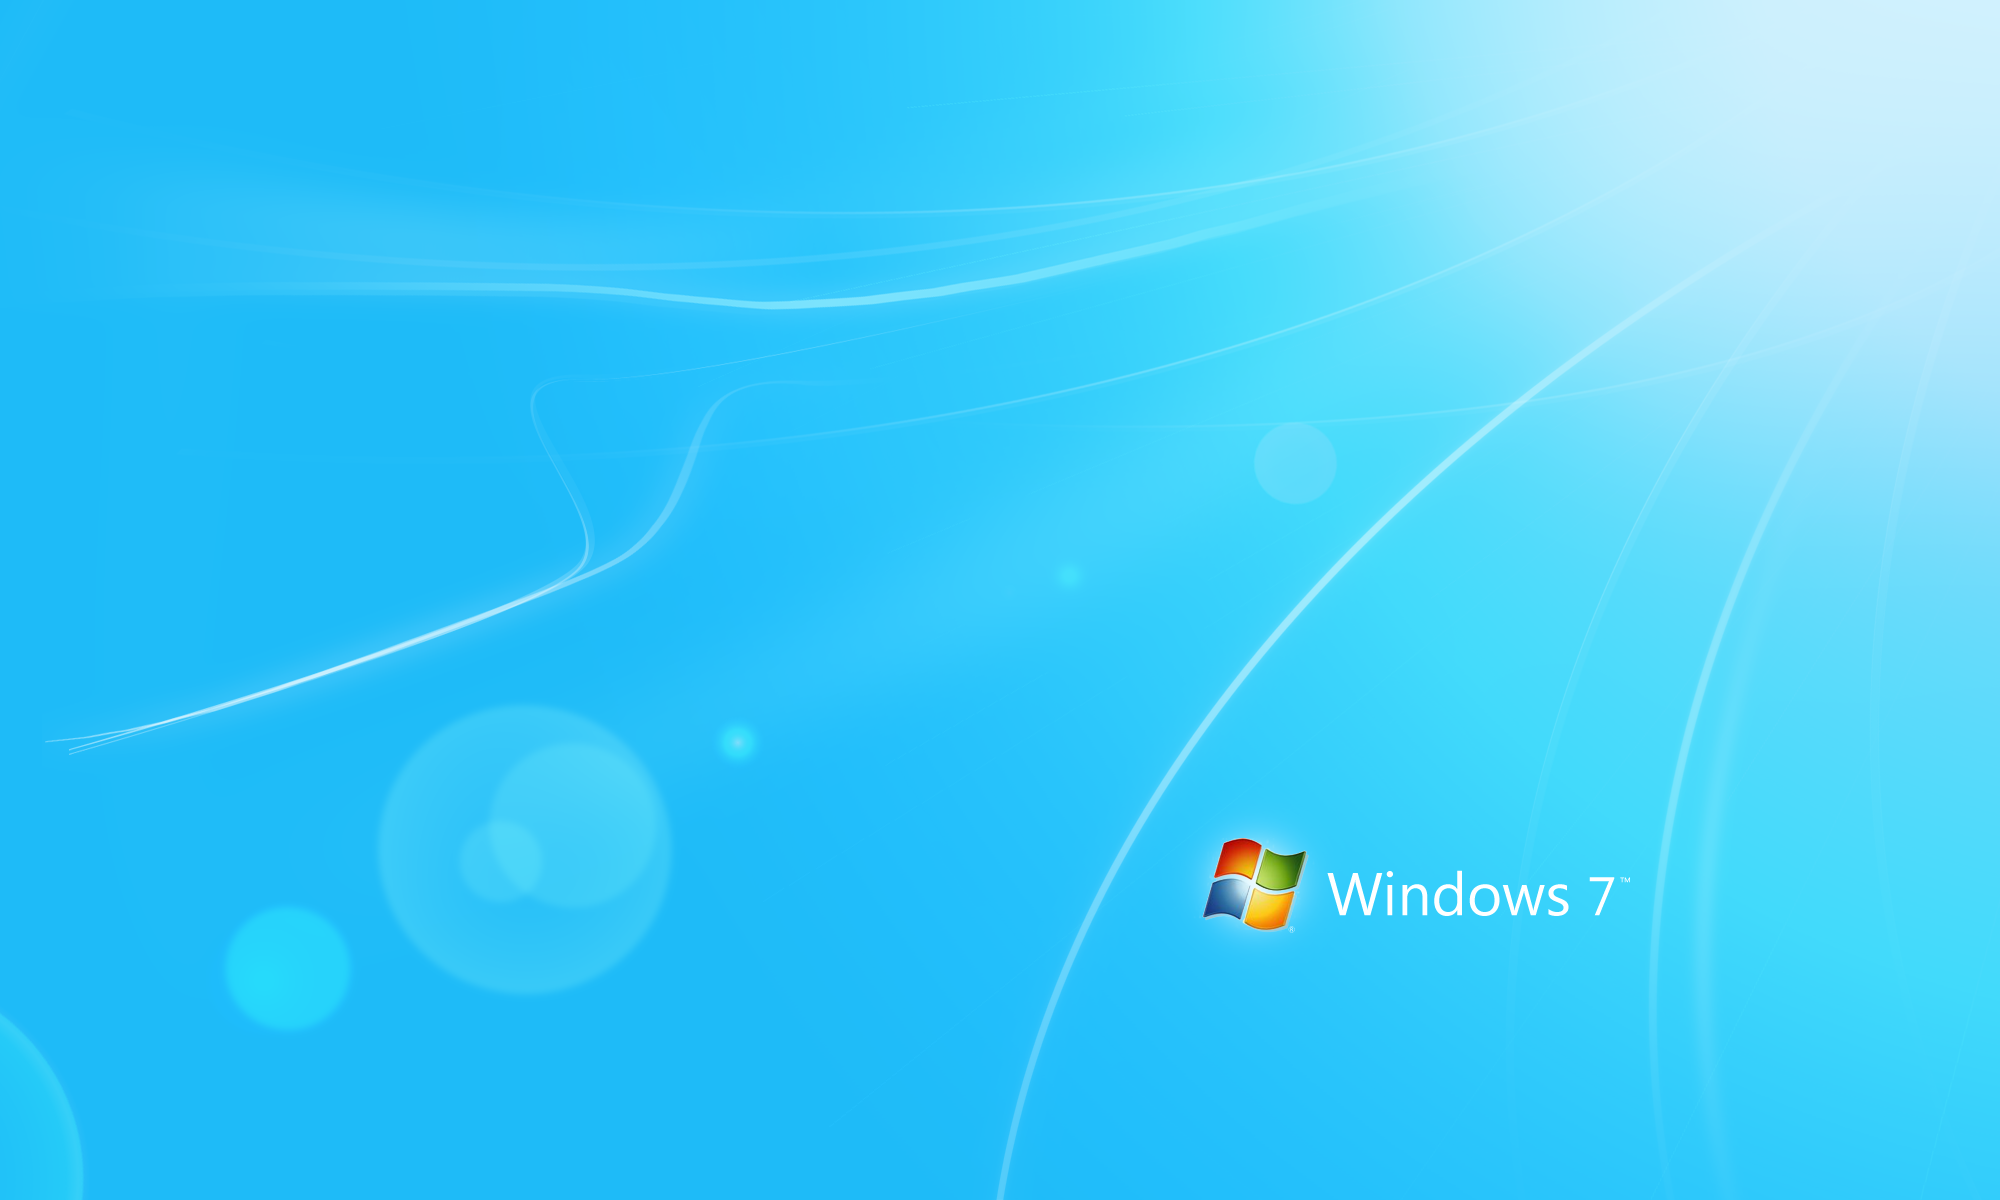 Включи для windows 7. Обои виндовс 7. Windows 7 рабочий стол. Заставка на рабочий стол стандартная. Заставка на рабочий стол Windows 7.